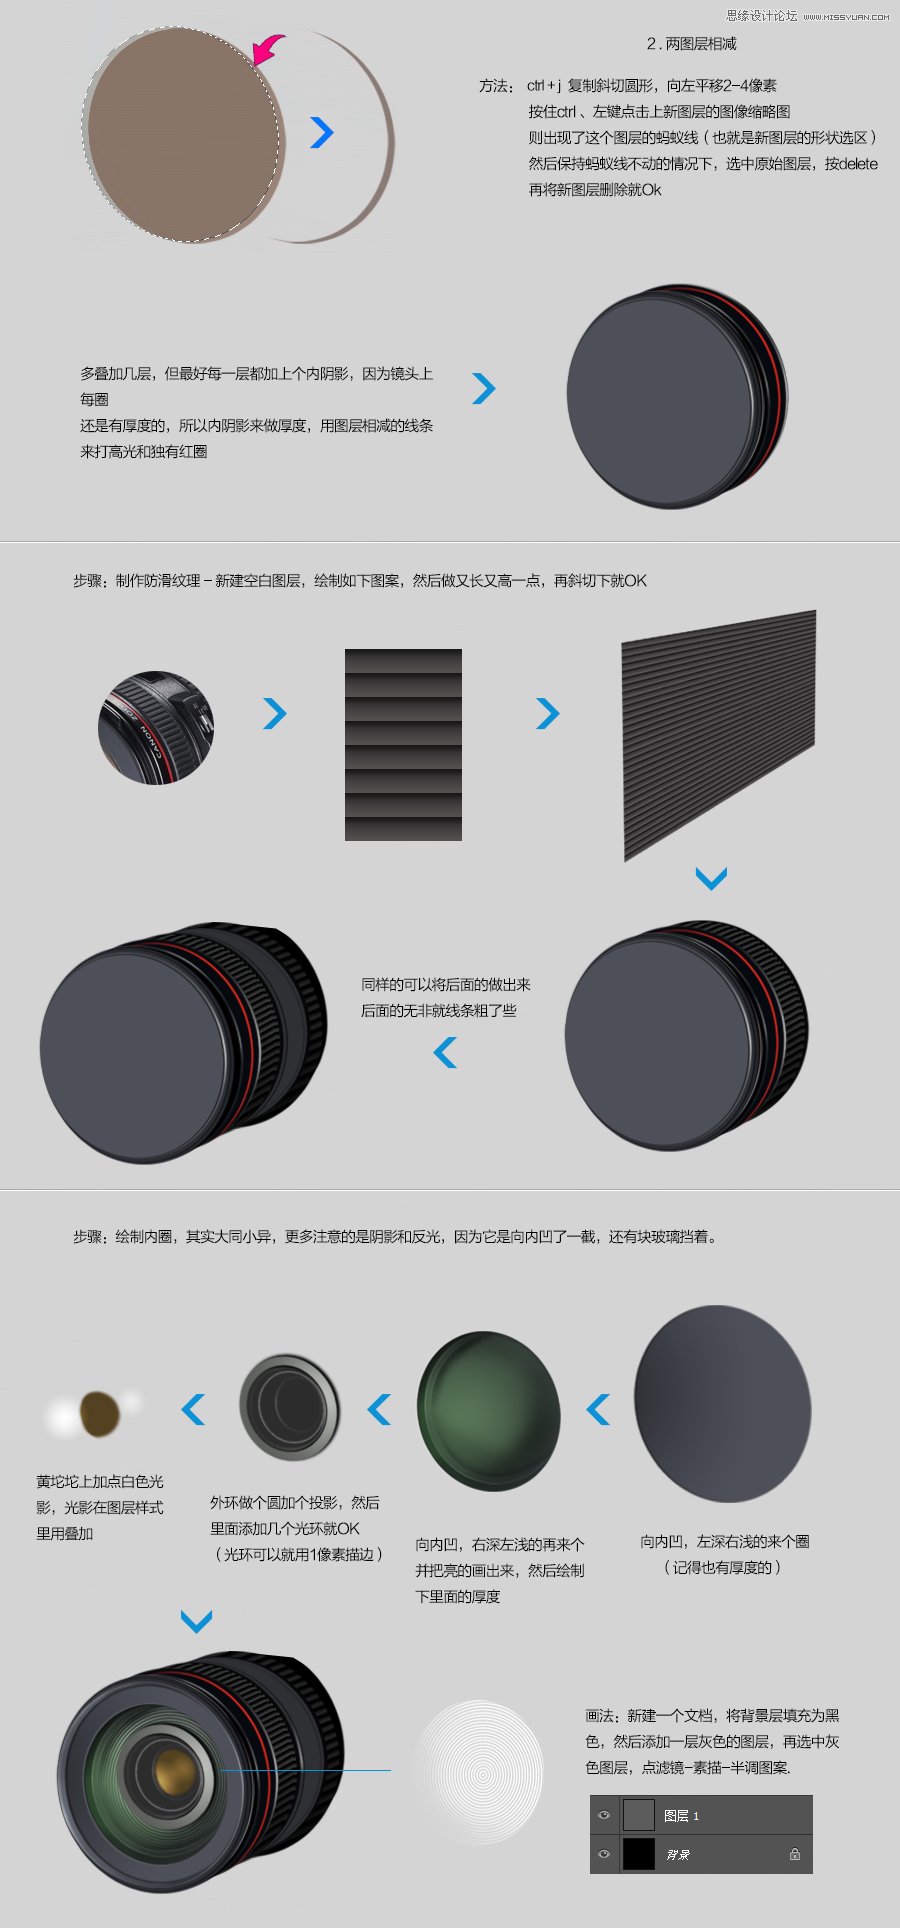 PhotoShop(PS)模仿绘制超逼真的佳能6D相机实例教程